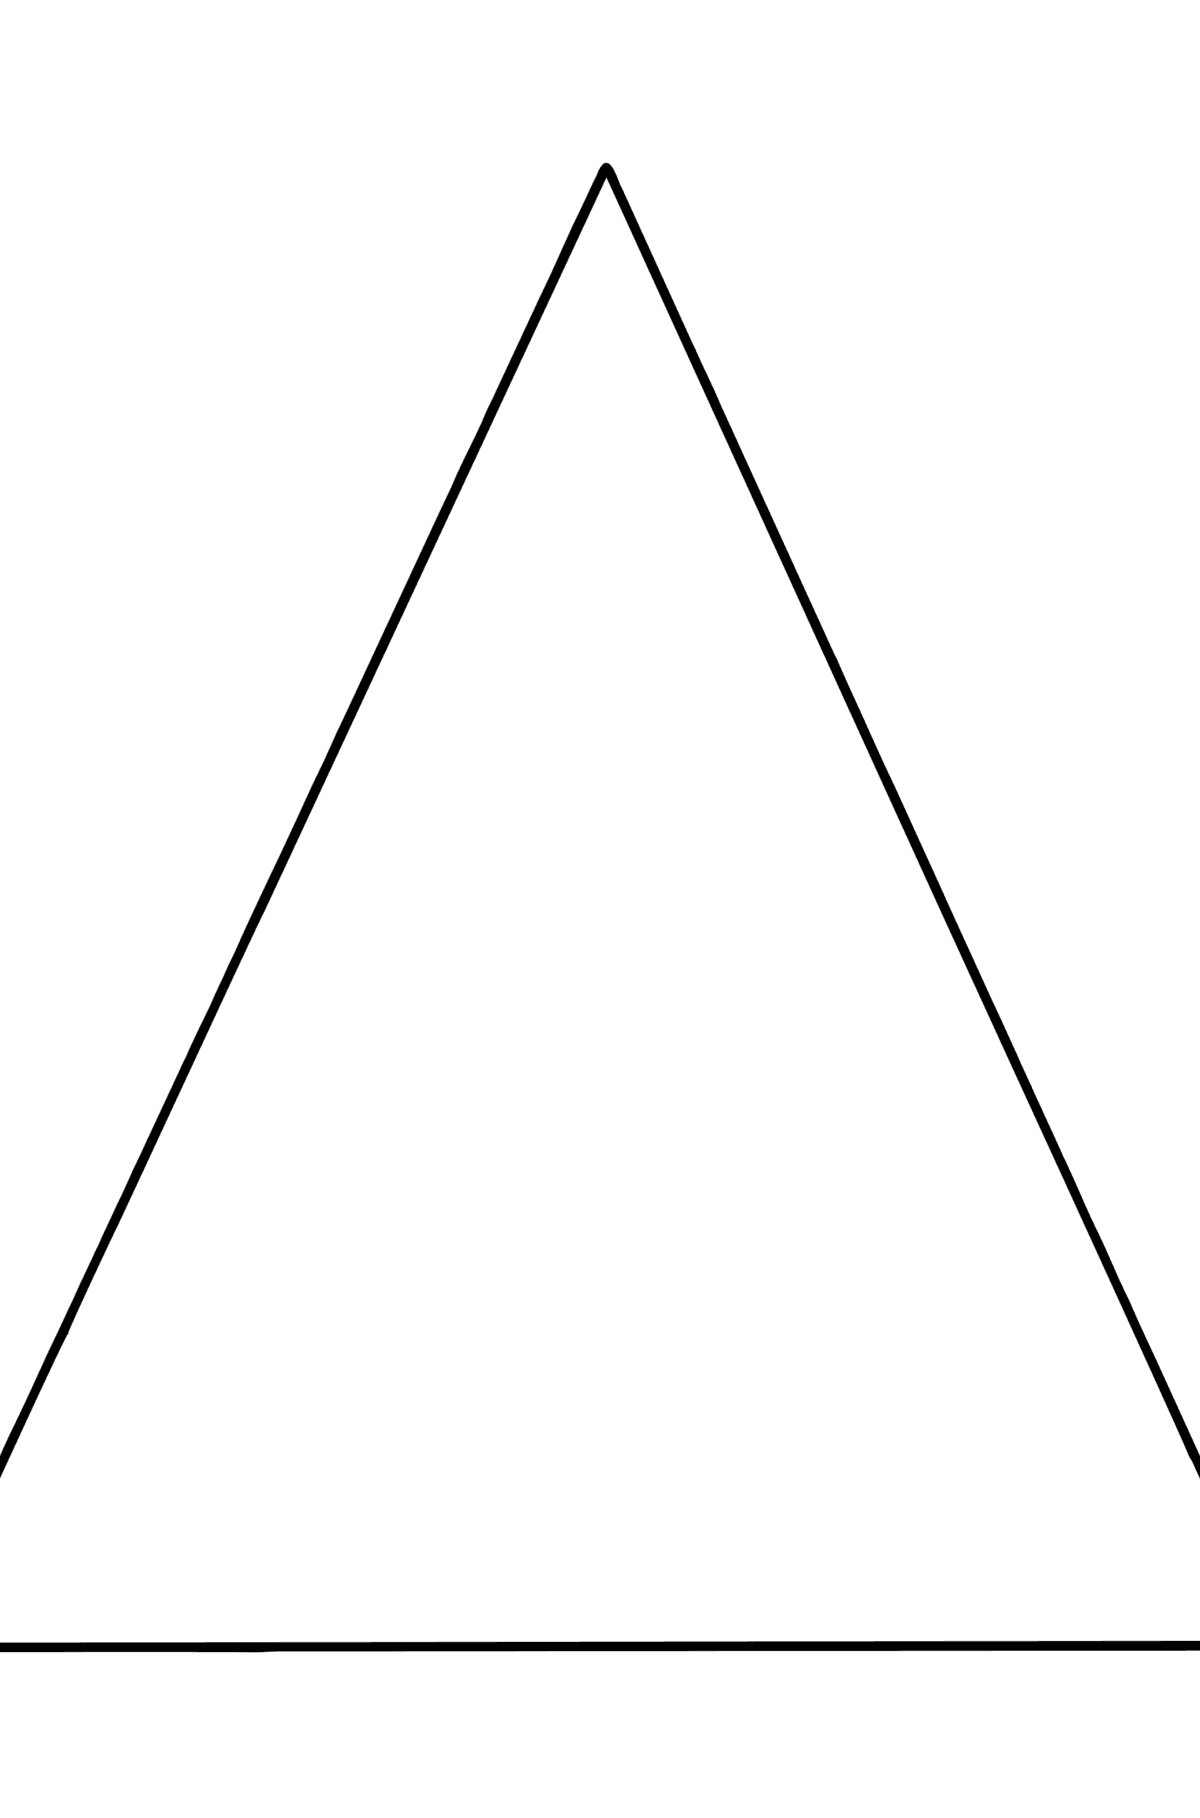 Boyama sayfası üçgen - Boyamalar çocuklar için